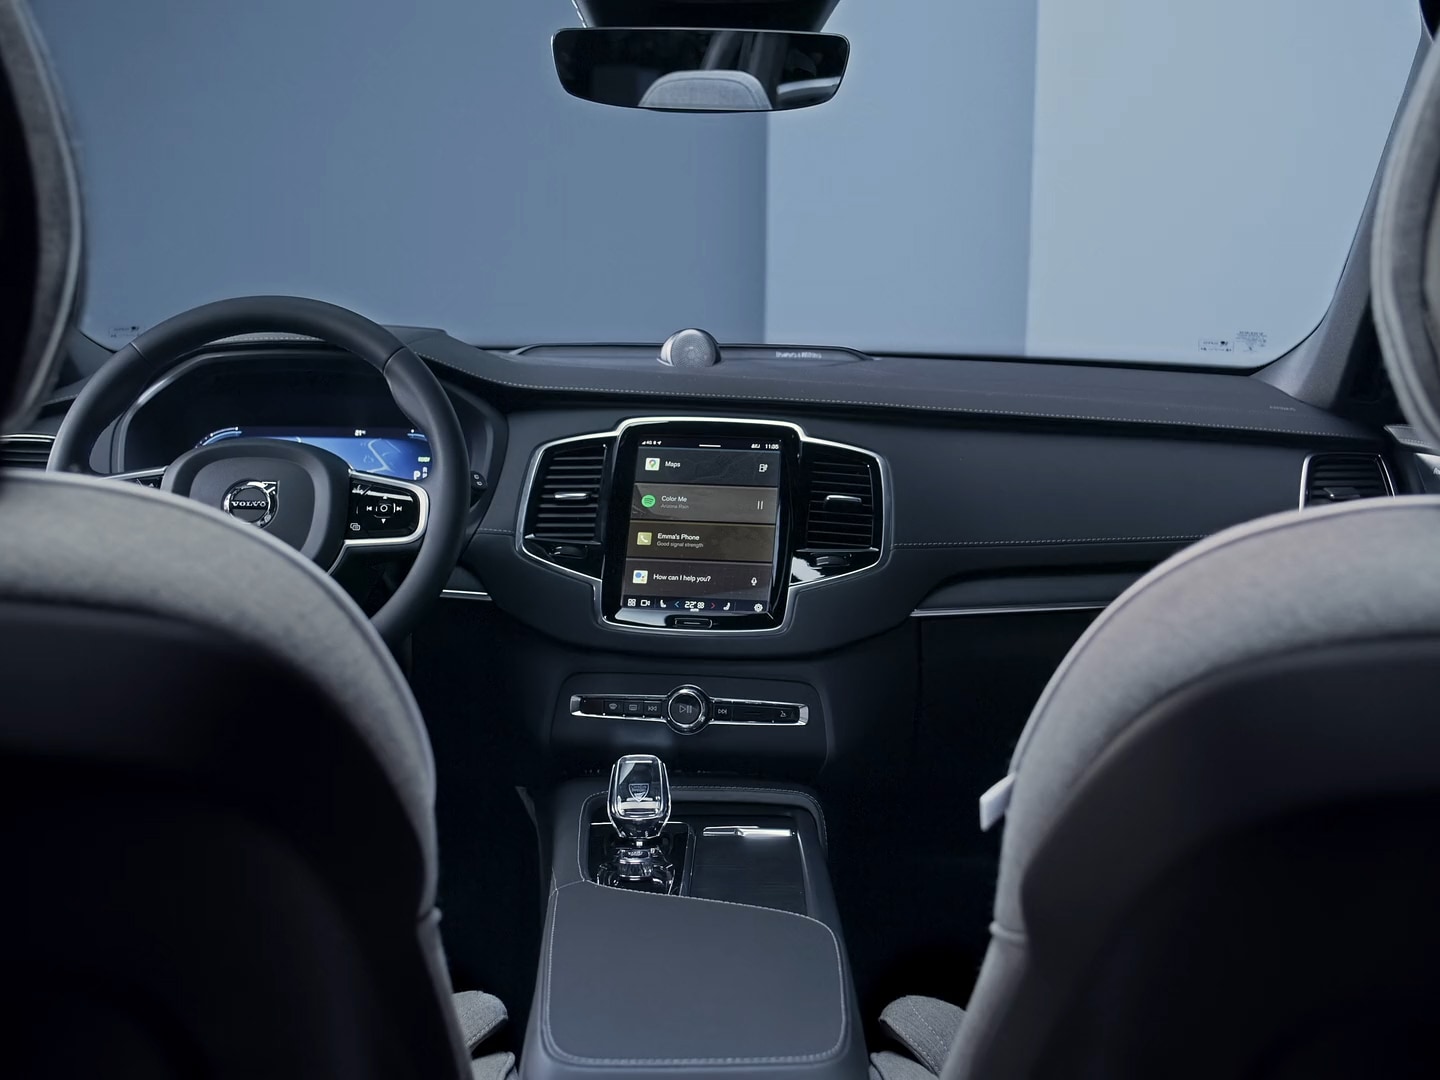 Stuur, instrumentenpaneel, aanraakscherm met infotainment en middenconsole van de Volvo XC90 plug-in hybride.